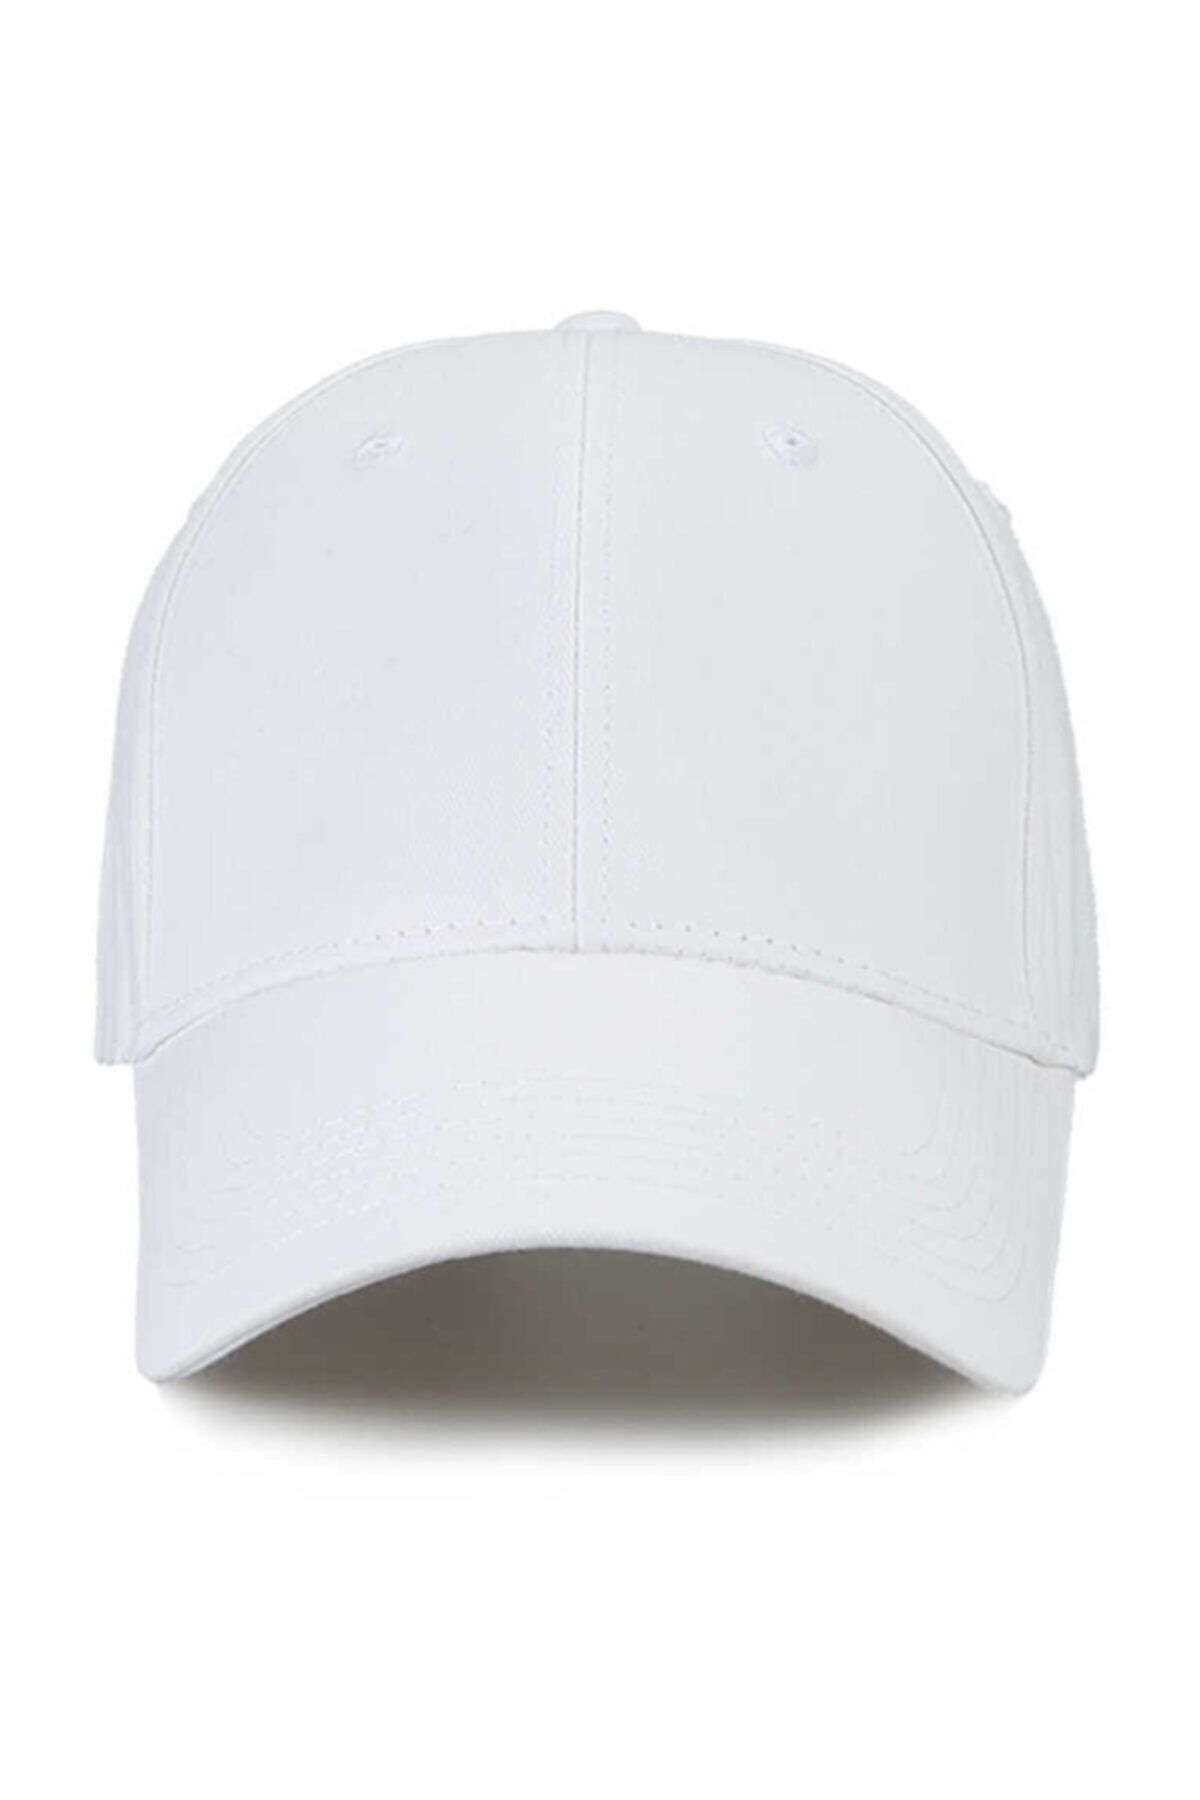 PRC şapka Yazlık Beyzbol Düz Ve Çeşitli Renklerde Şapka ,kep